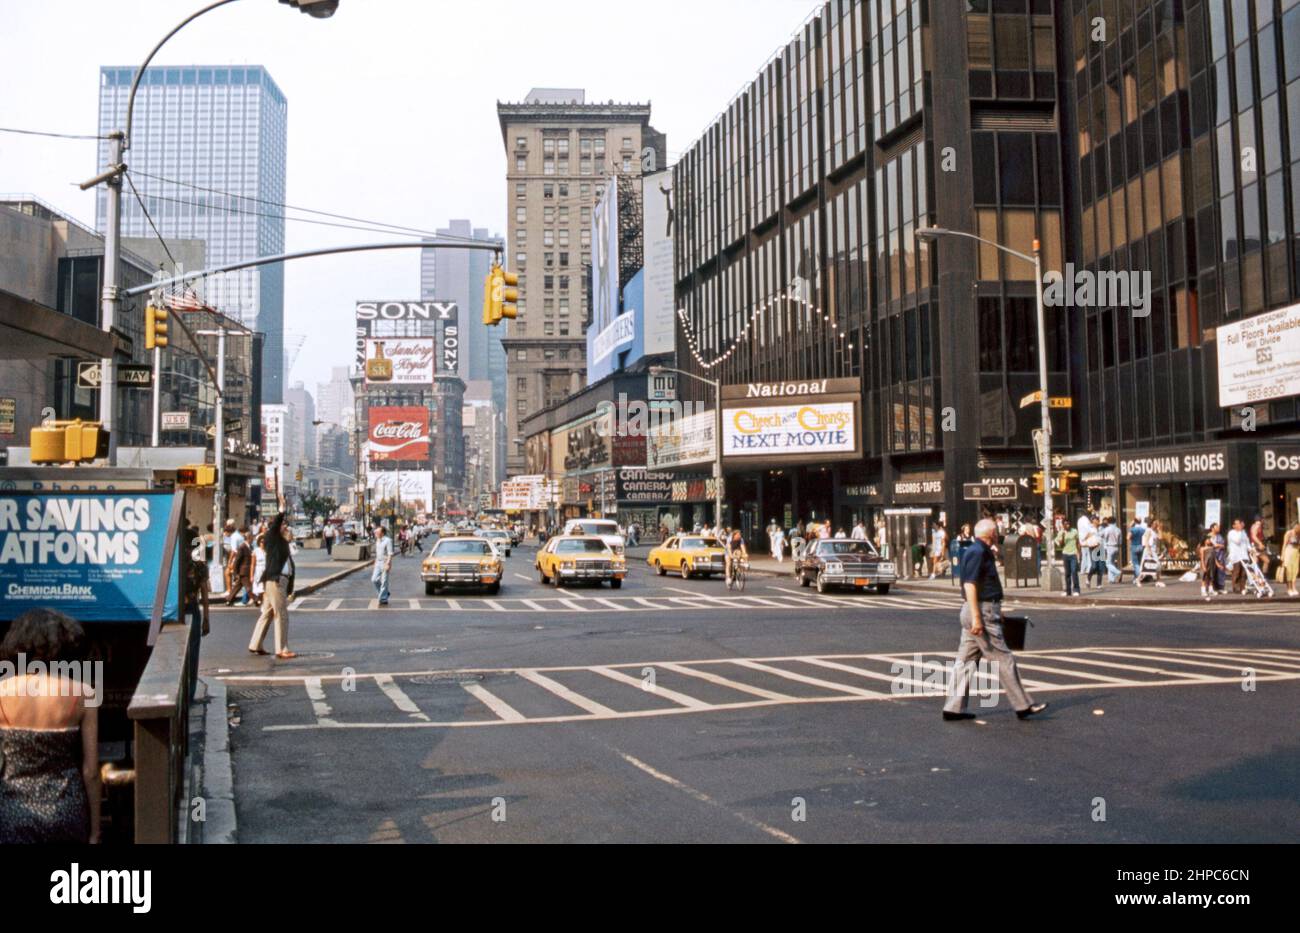 Times Square im Jahr 1980, Blick nach Norden entlang der 7. Avenue am Broadway/West 44. Street, New York City, USA. Ein Display zeigt an, dass die neueste Filmveröffentlichung ‘Cheech and Chong’s Next Movie’ ist. Der Times Square ist ein wichtiger kommerzieller Knotenpunkt, Touristenort und Unterhaltungsviertel im Stadtteil Midtown Manhattan von New York, an der Kreuzung von Broadway und Seventh Avenue. Hell erleuchtet von zahlreichen Werbetafeln und Werbeplakaten erstreckt er sich von den Straßen West 42. bis West 47. und wird manchmal als ‘The Crossroads of the World’ bezeichnet – ein altes Foto aus dem Jahr 1980s. Stockfoto